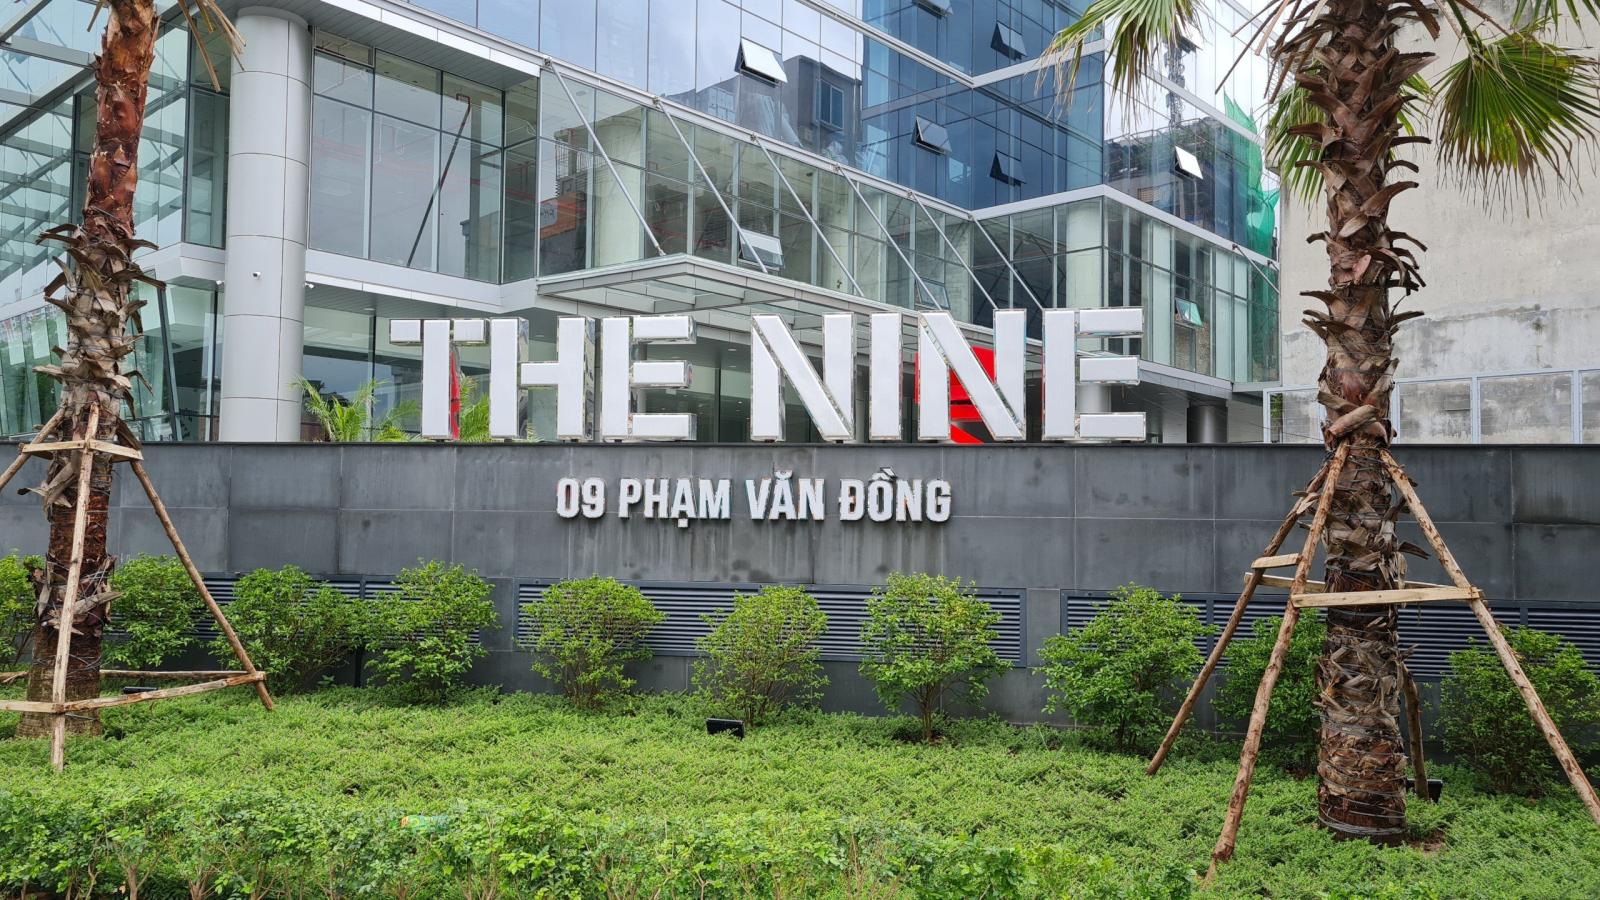 Cho thuê văn phòng tòa nhà The Nine số 9 Phạm Văn Đồng, mặt bằng đẹp giá tốt. 13402746